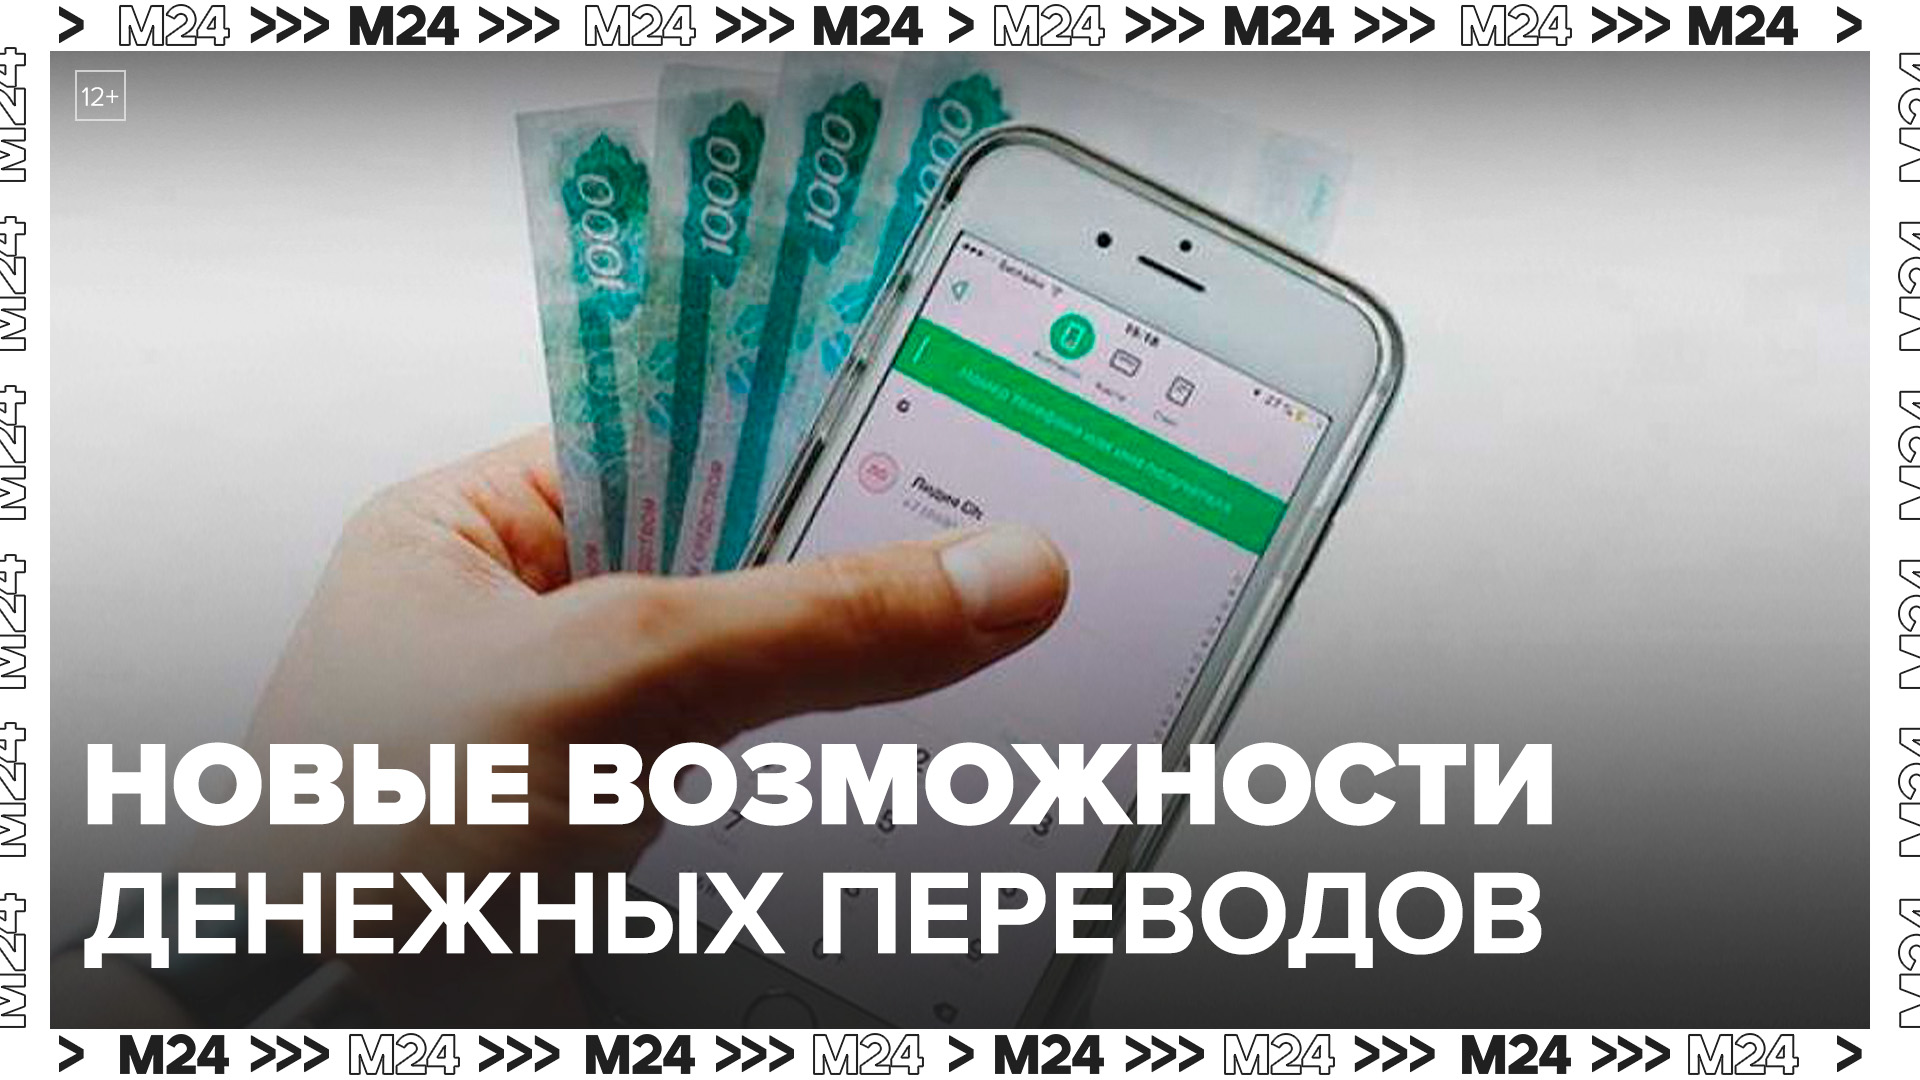 Перевод между своими счетами в банках до 30 млн рублей стал доступен в РФ с 1 мая - Москва 24